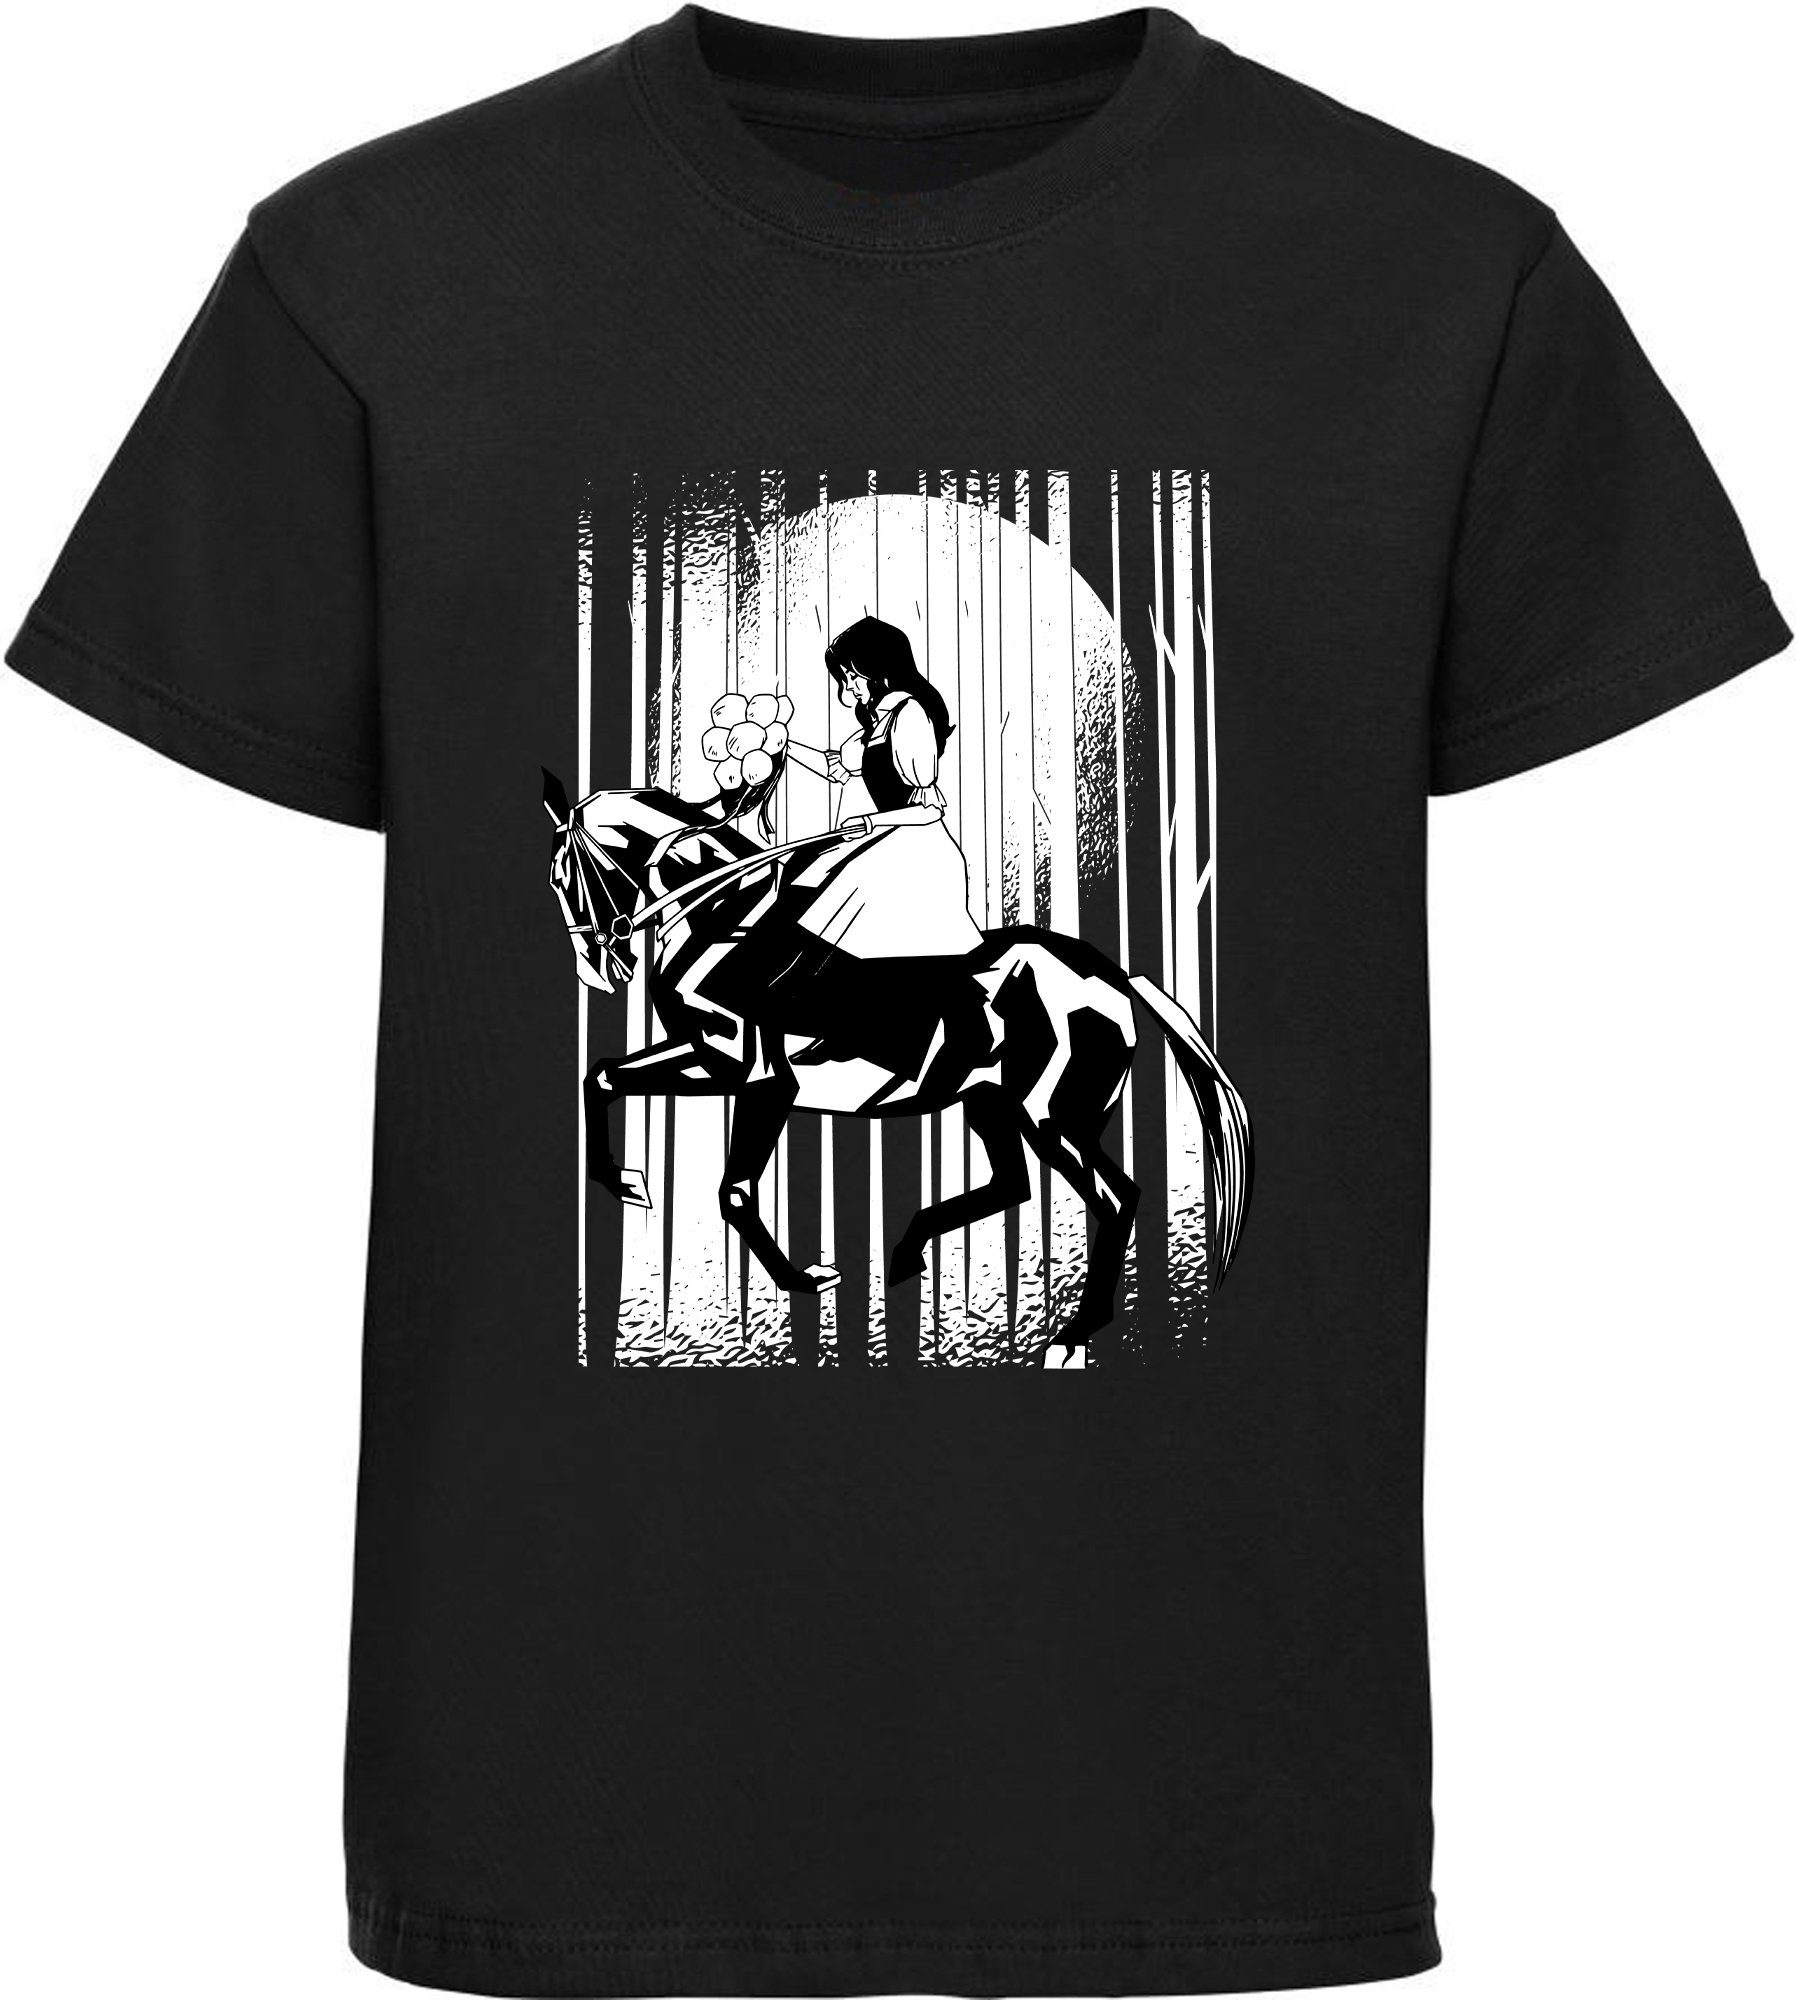 MyDesign24 Print-Shirt bedrucktes Mädchen T-Shirt berittenes Pferd Baumwollshirt mit Aufdruck, i138 schwarz